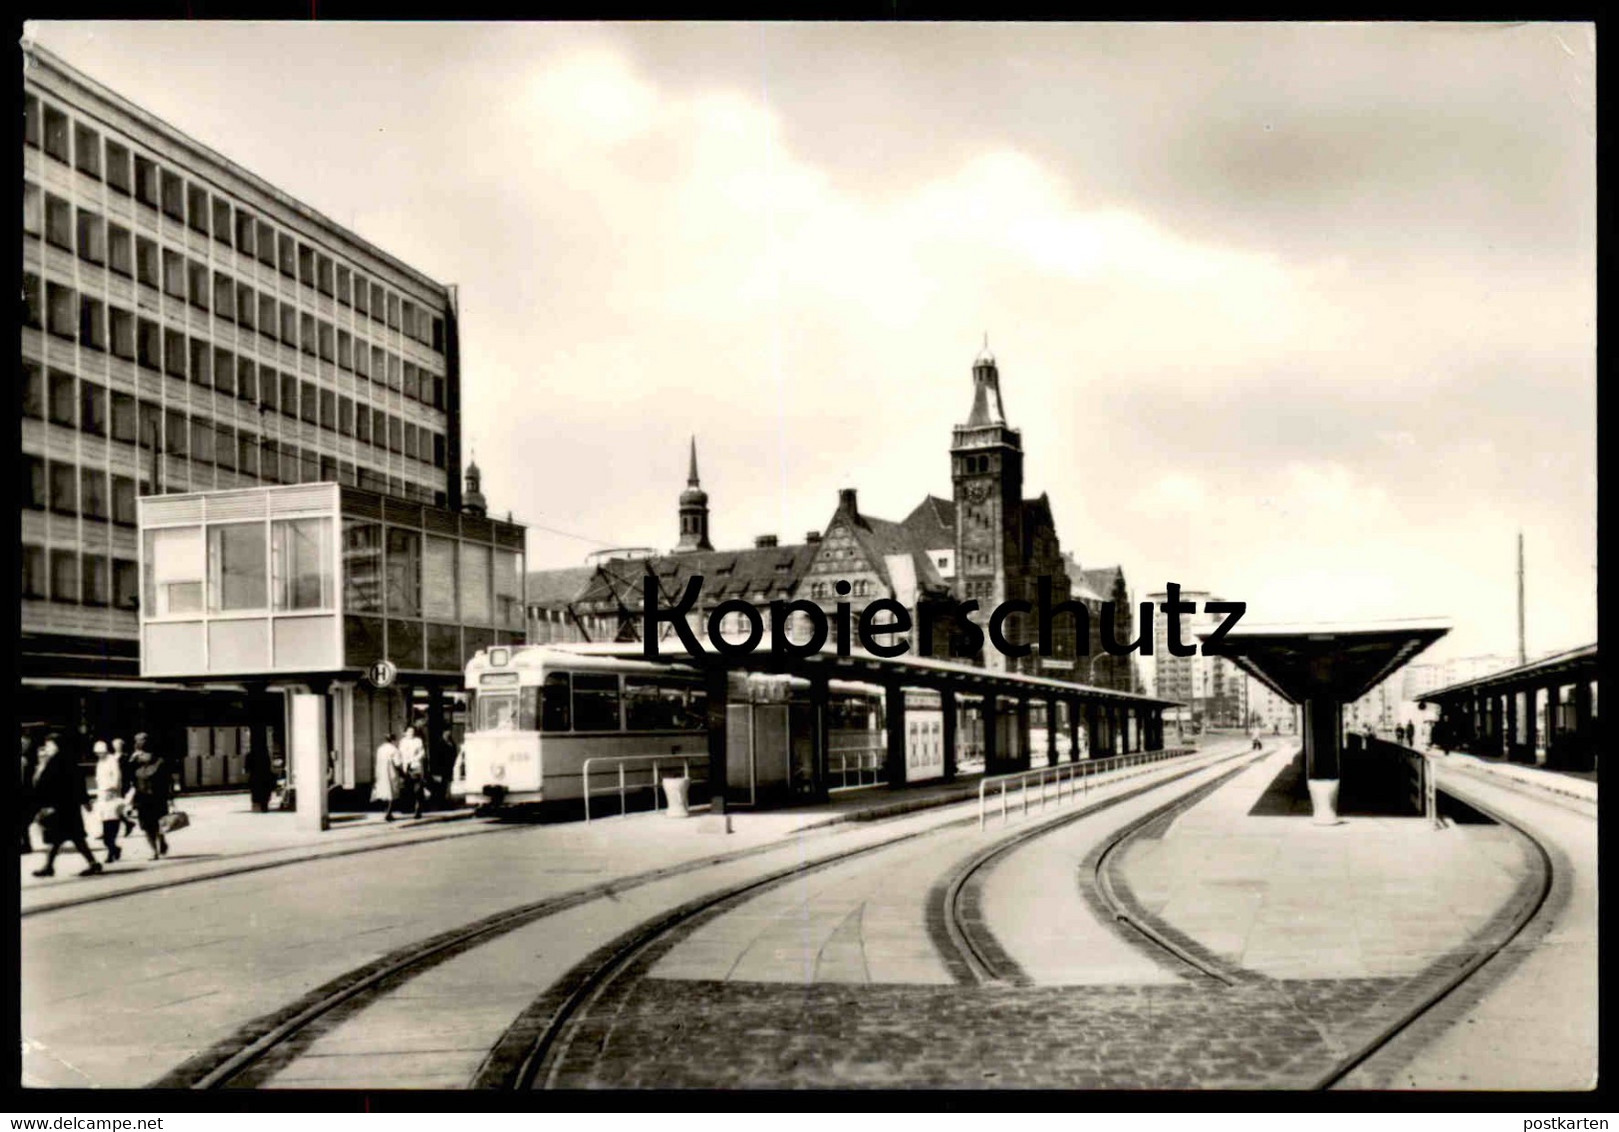 ÄLTERE POSTKARTE KARL-MARX-STADT POSTSTRASSE ZENTRALHALTESTELLE DER STRASSENBAHN Chemnitz Tramway Tram Cpa AK Postcard - Chemnitz (Karl-Marx-Stadt 1953-1990)